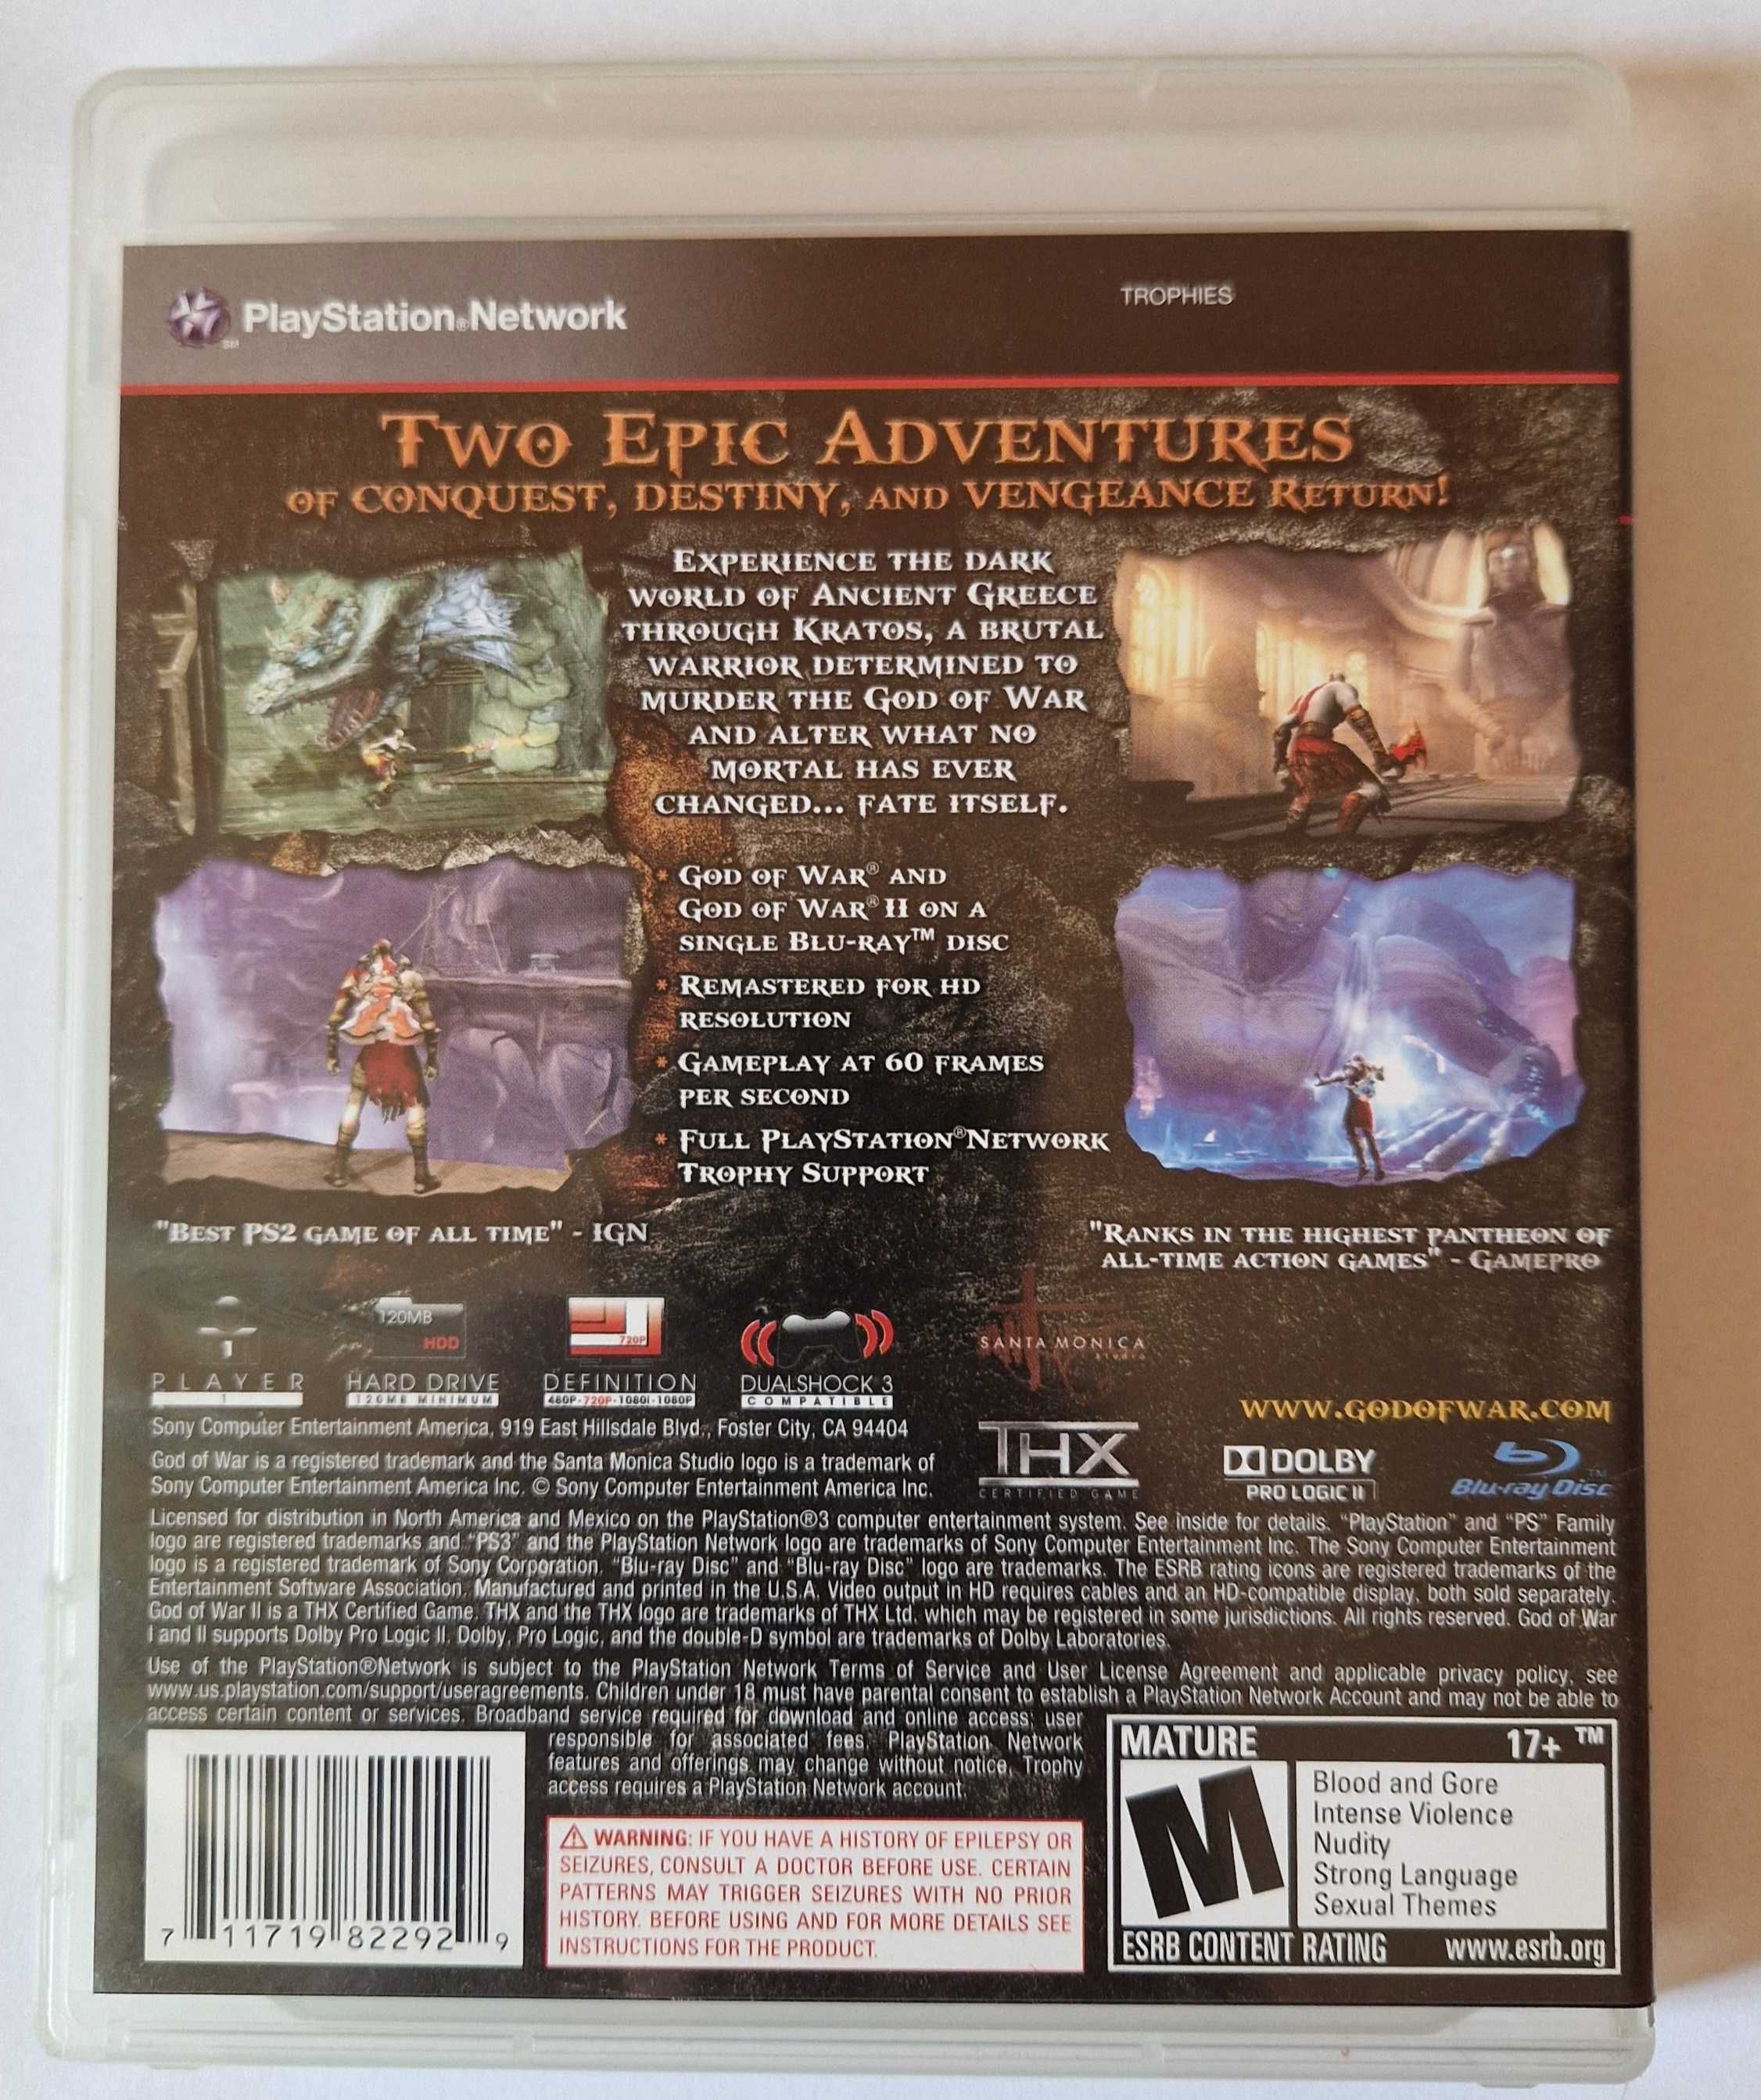 God of War Collection Vol I i Vol II (ENG/PL) PS3